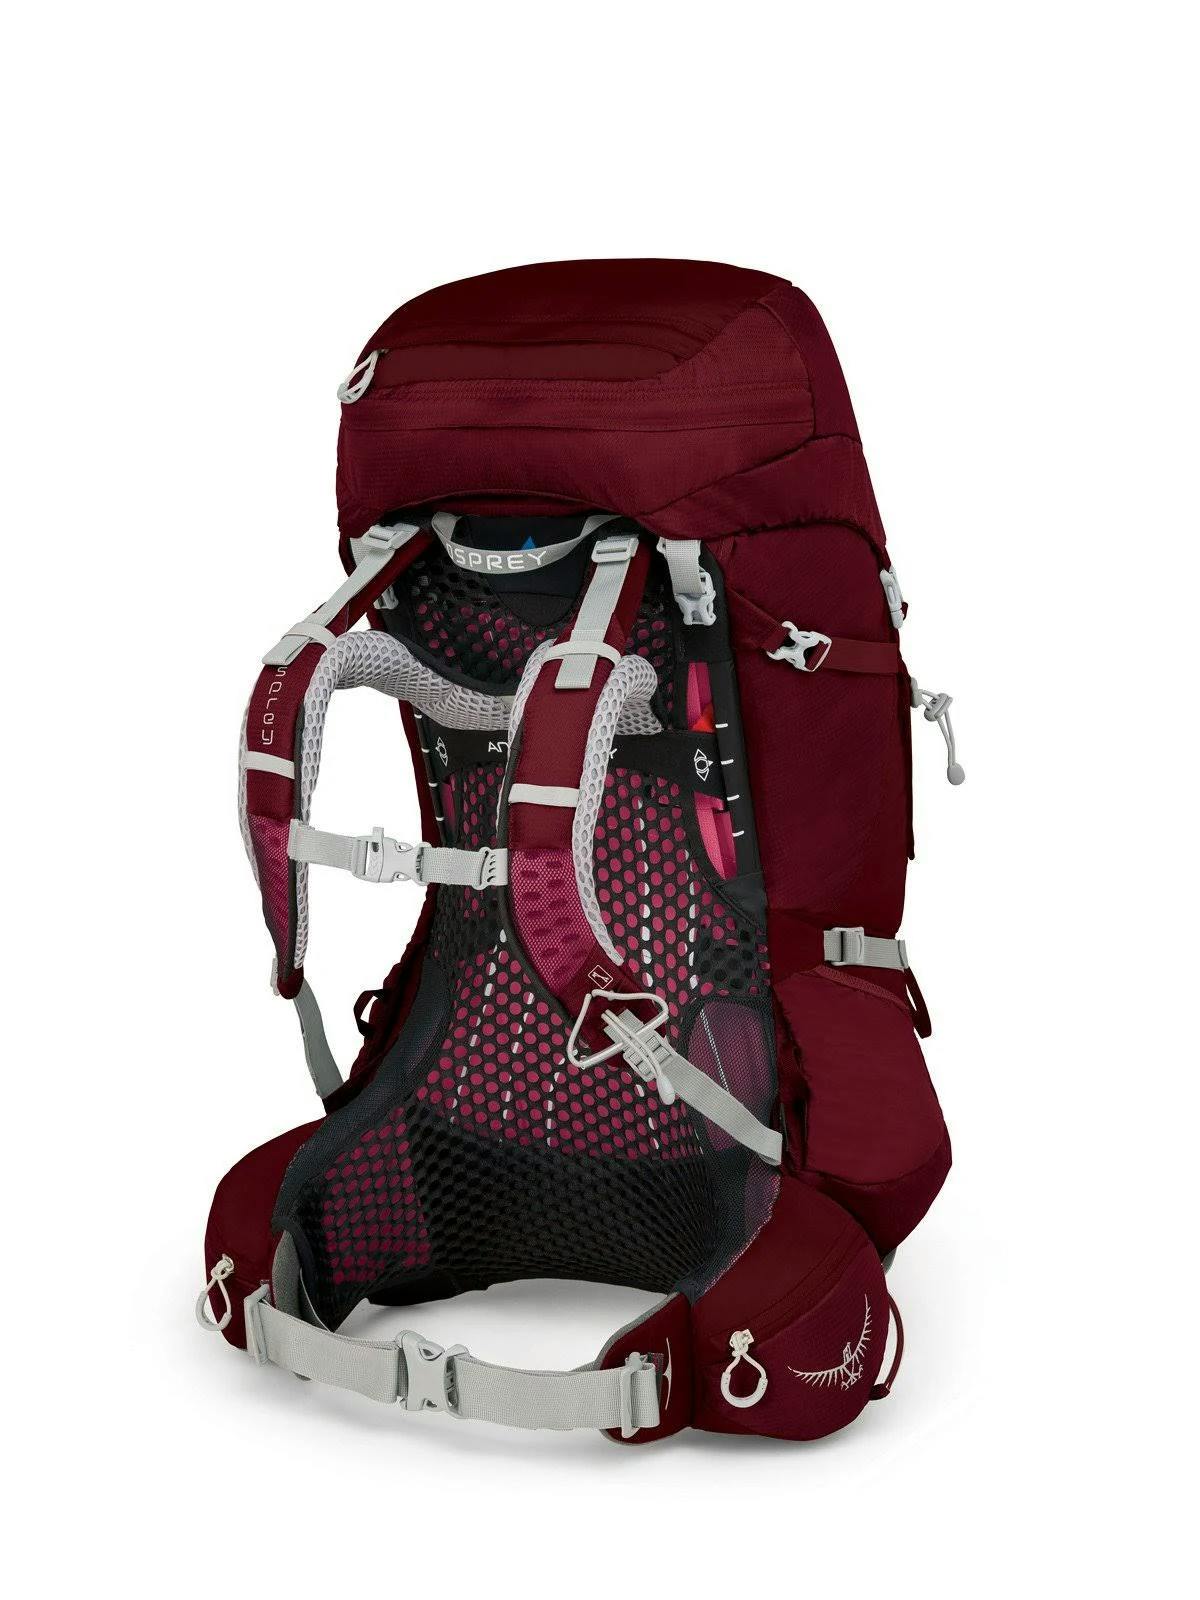 Osprey Aura AG 50 Backpack · Women's